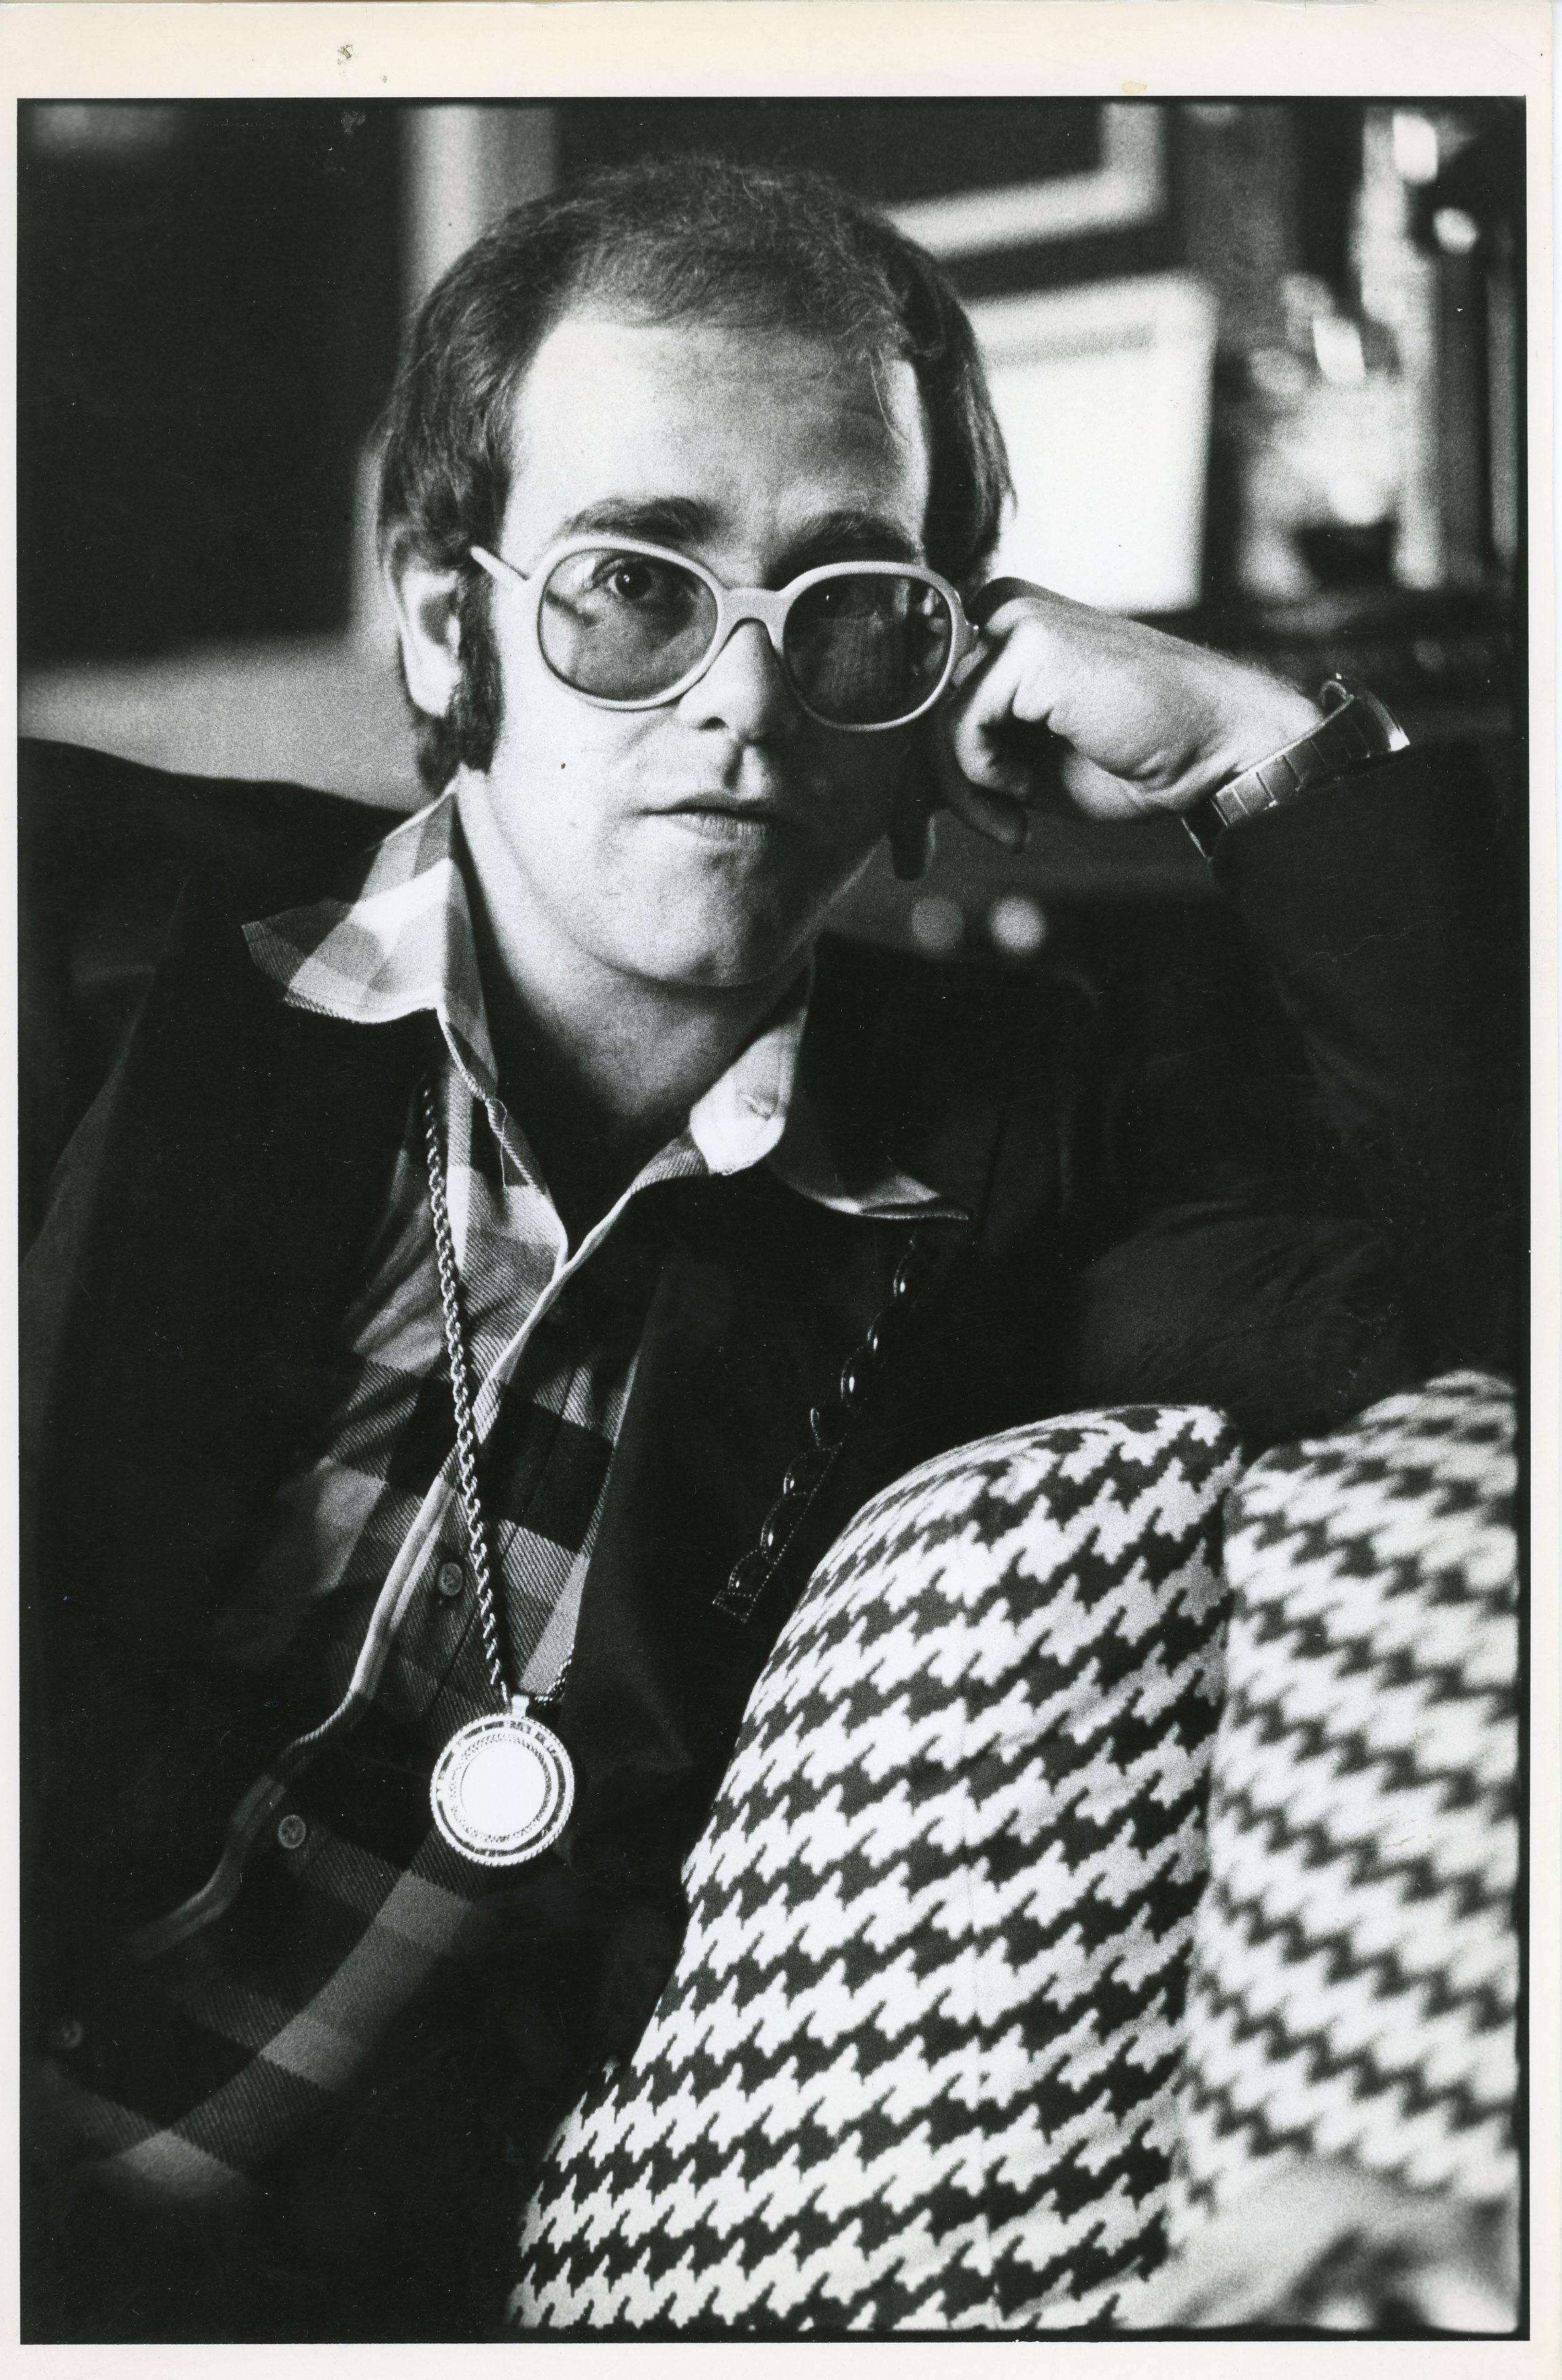 Neil Jones Portrait Photograph - Elton John Classic Original Photograph